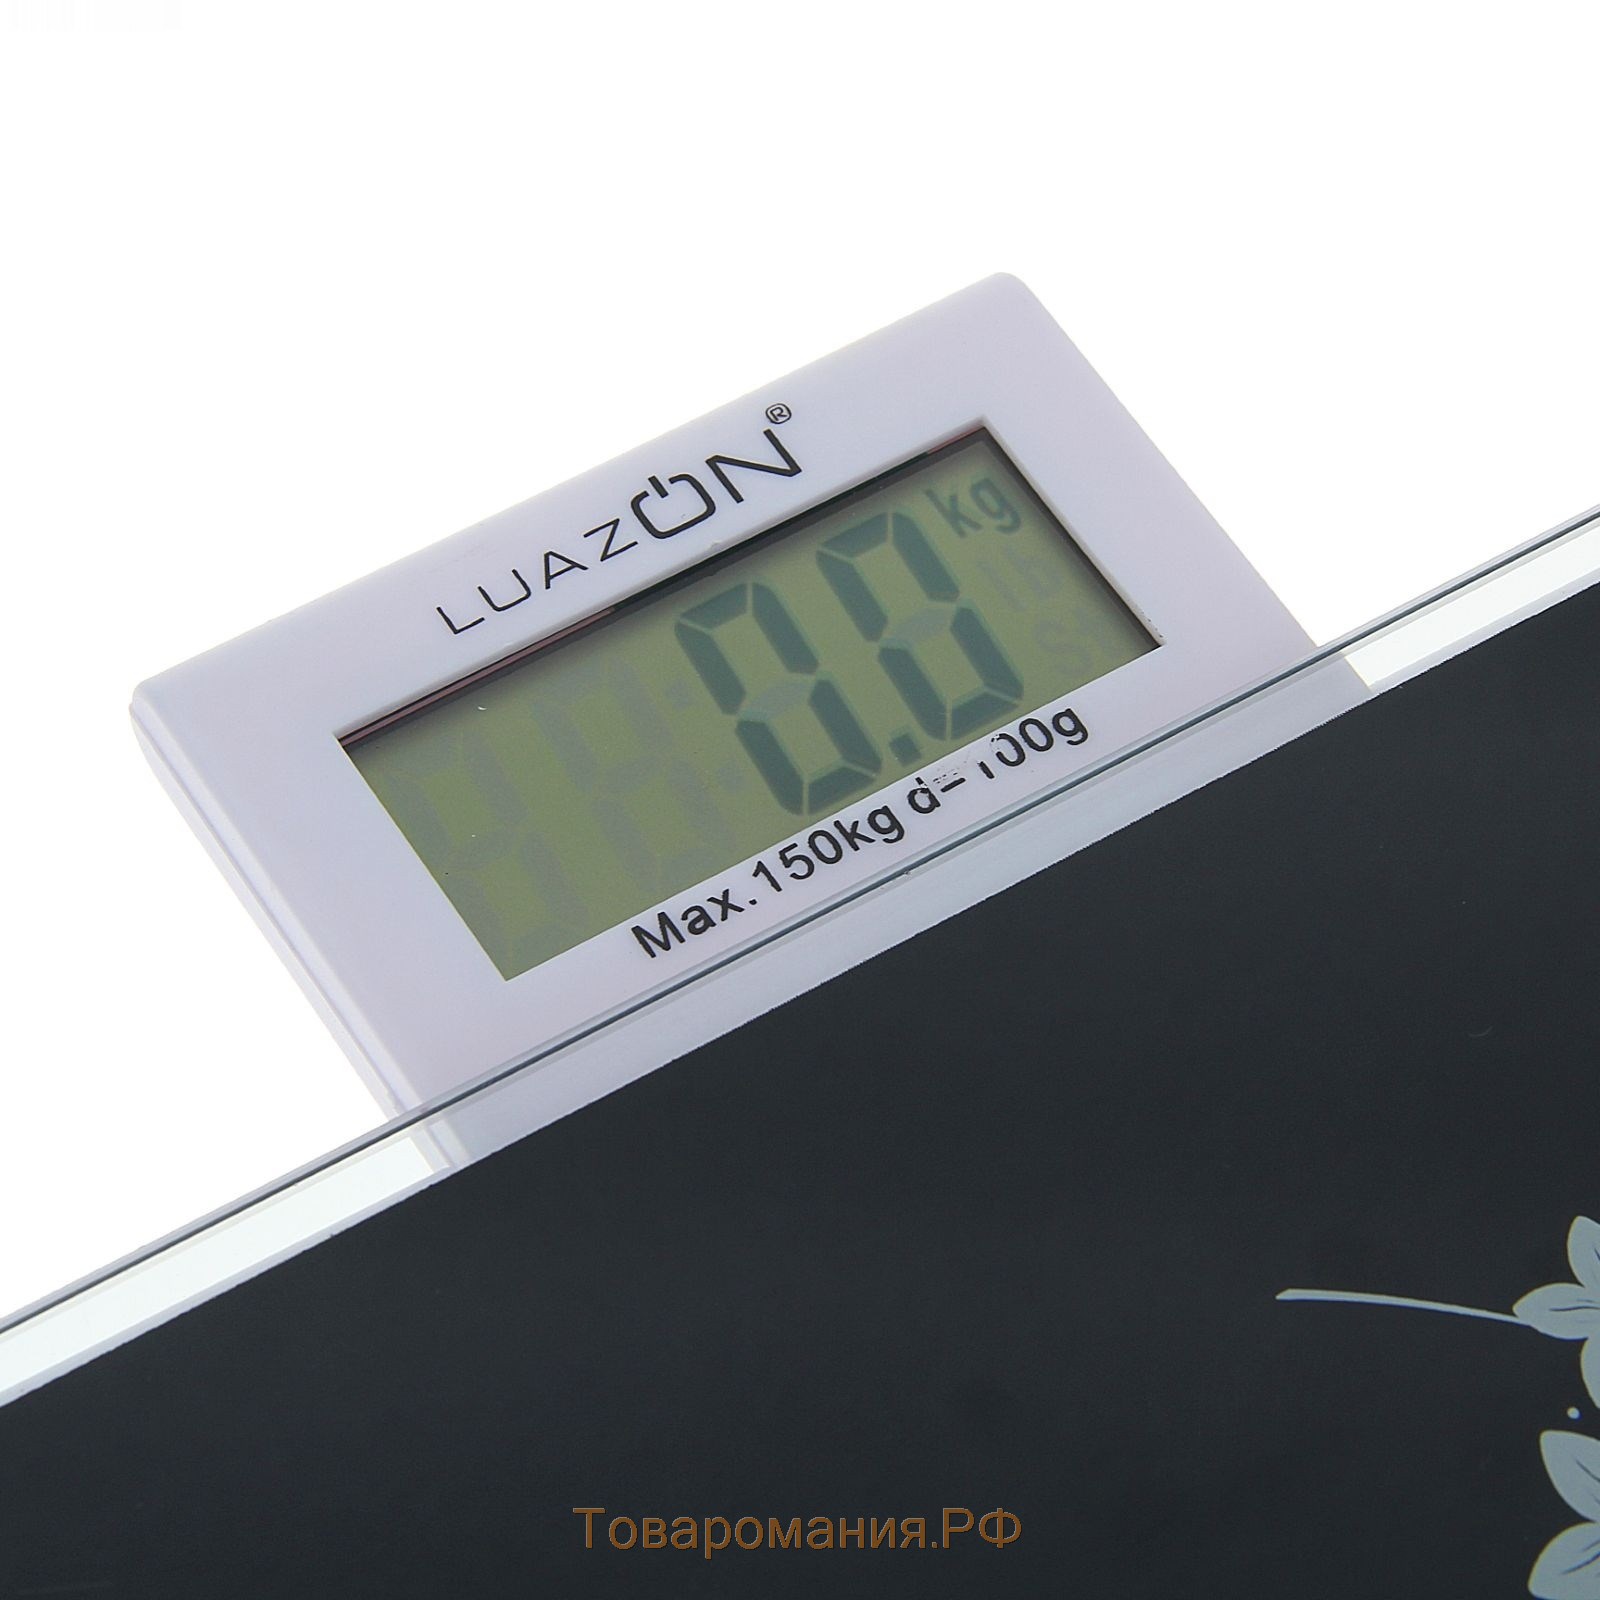 Весы напольные LuazON LVP-1802, электронные, до 150 кг, чёрные